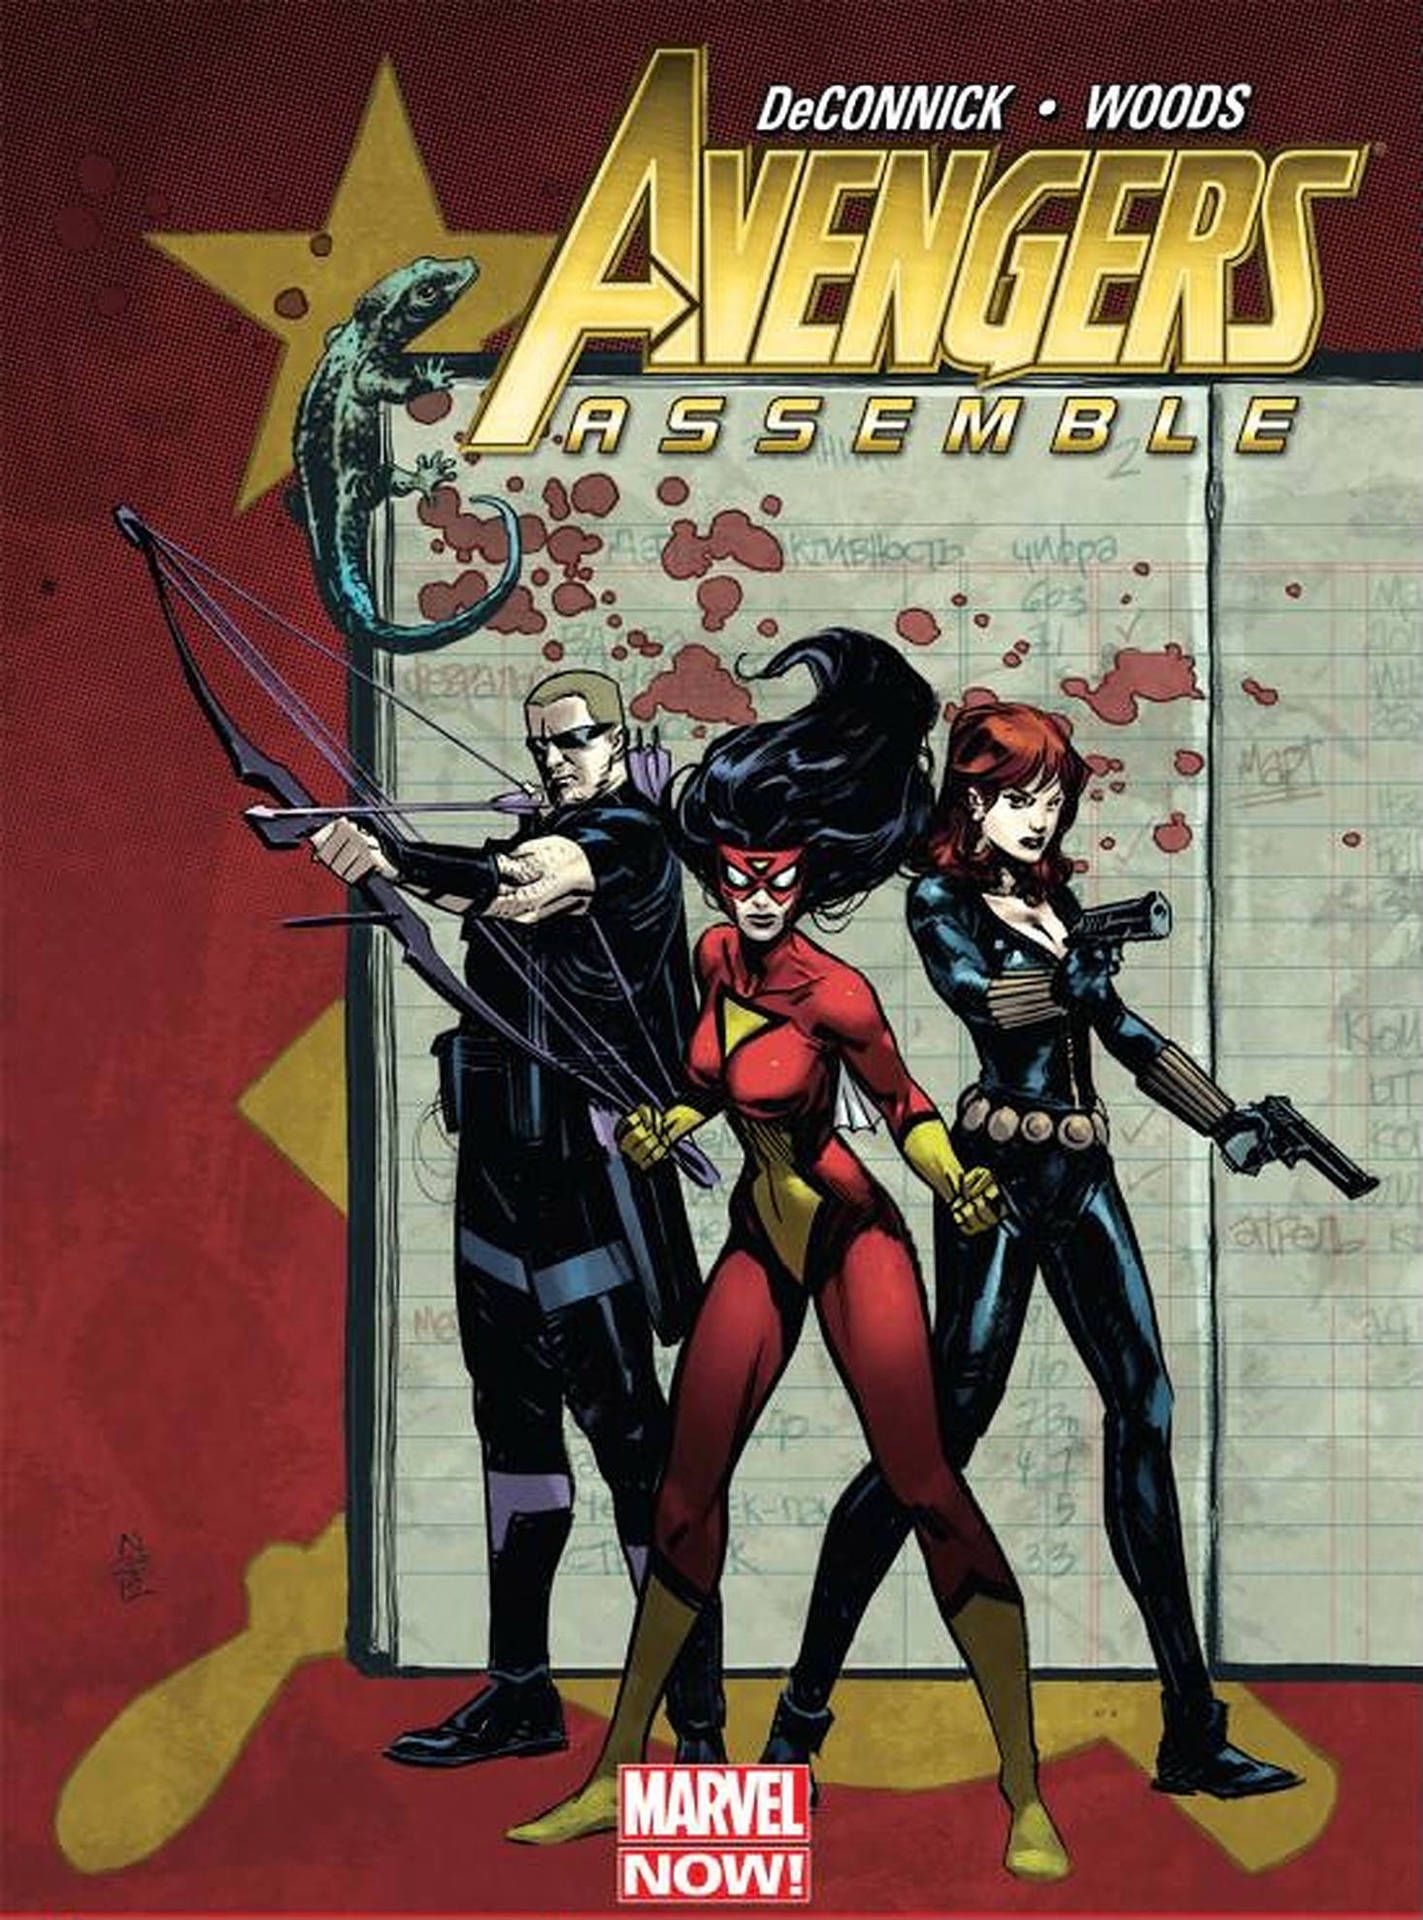 Tapetför Datorn Eller Mobilen: Avengers Assemble Marvel Comic. Wallpaper